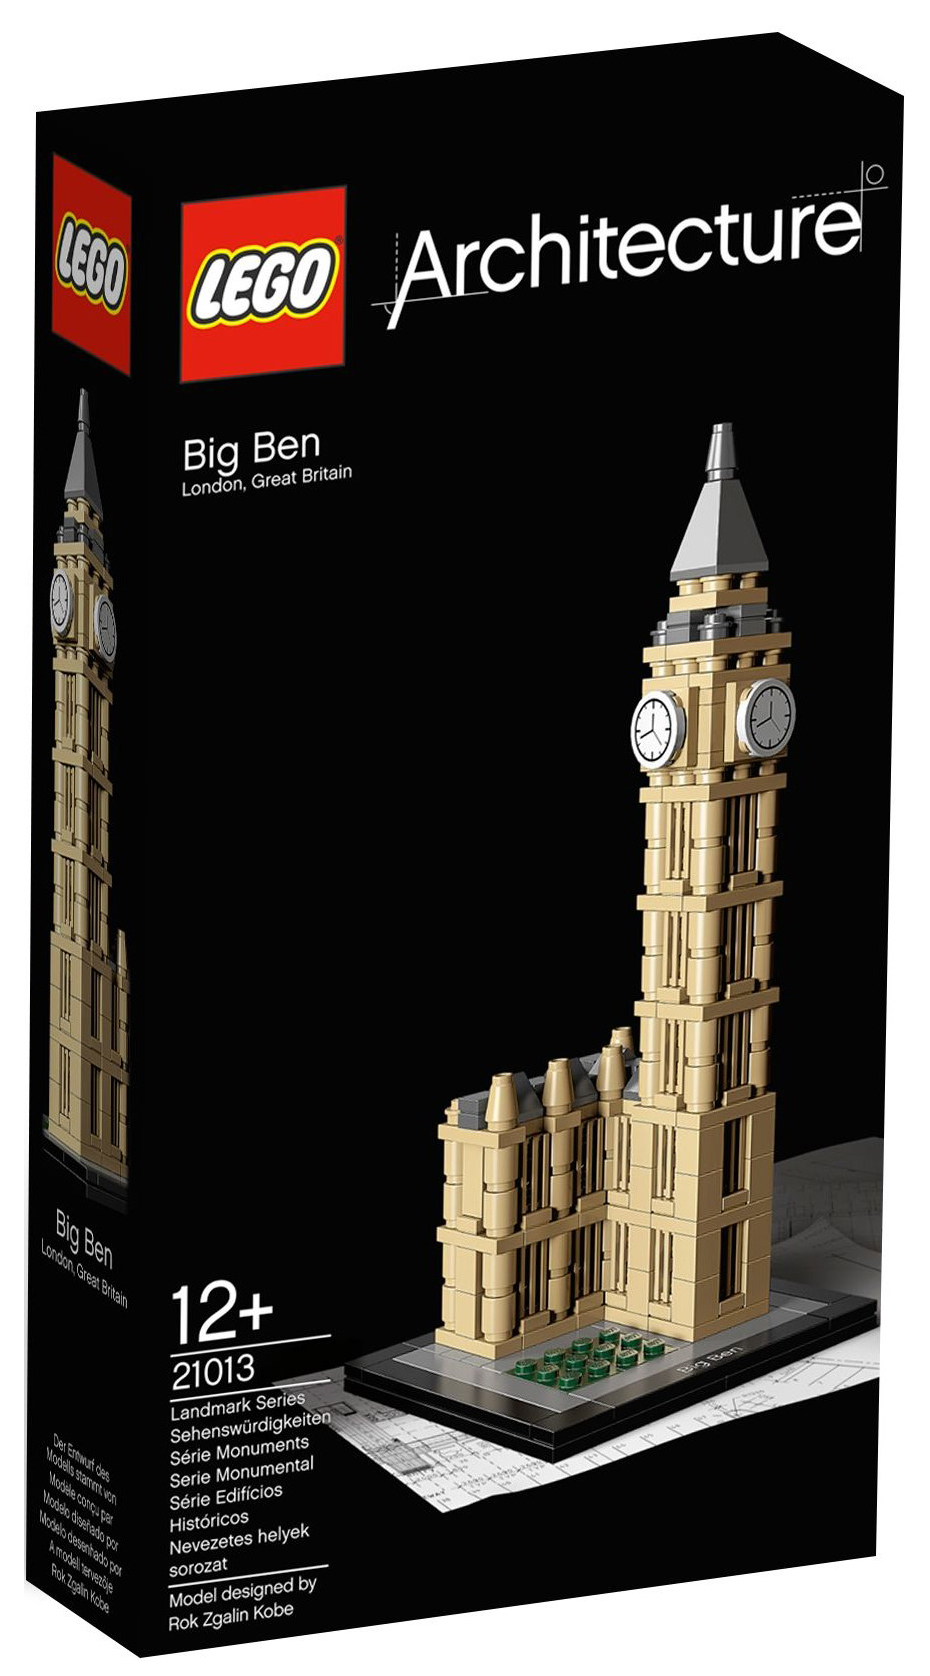 LEGO Architecture 21013 pas cher, Big Ben